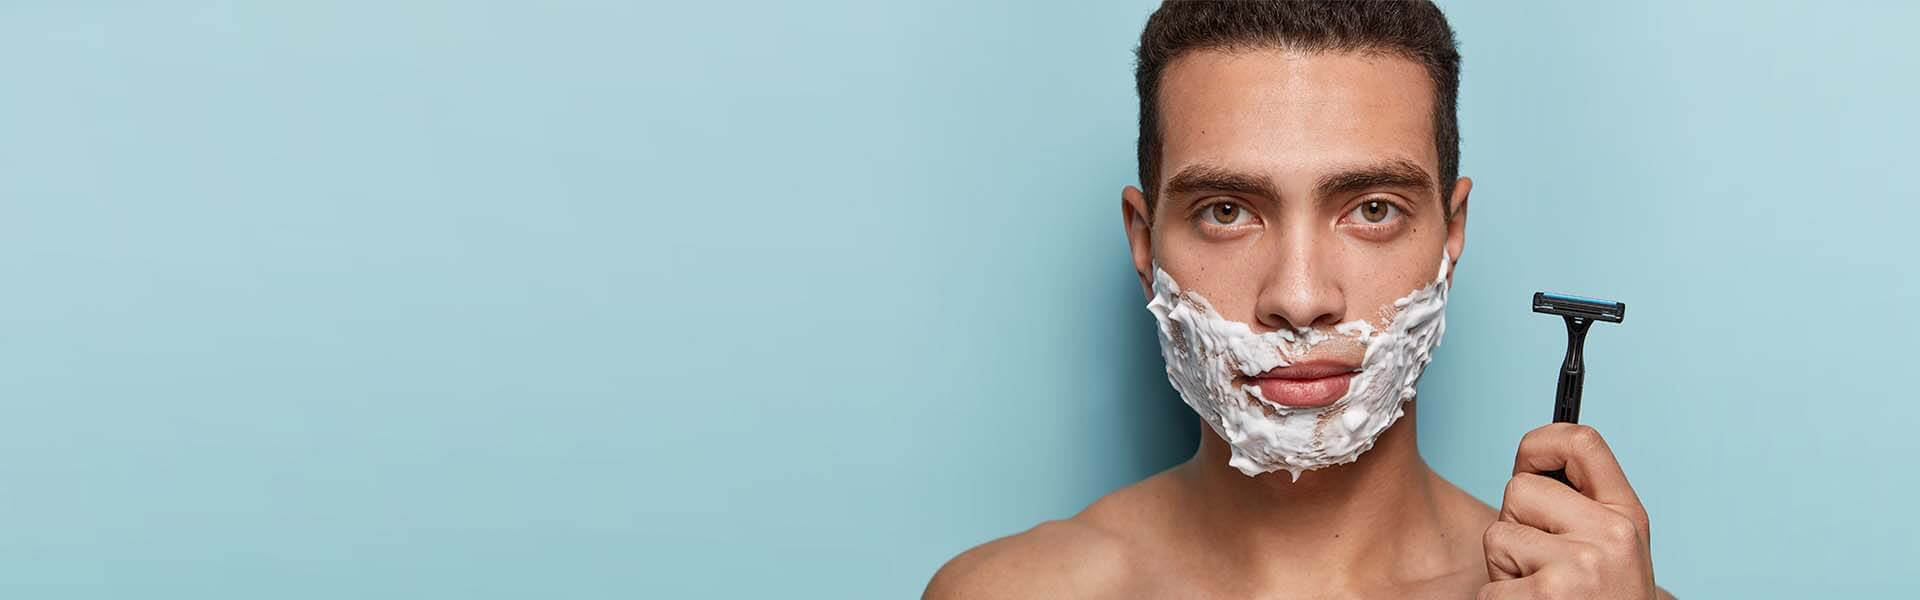 Mann rasiert sein Gesicht sorgfältig mit einem Nassrasierer